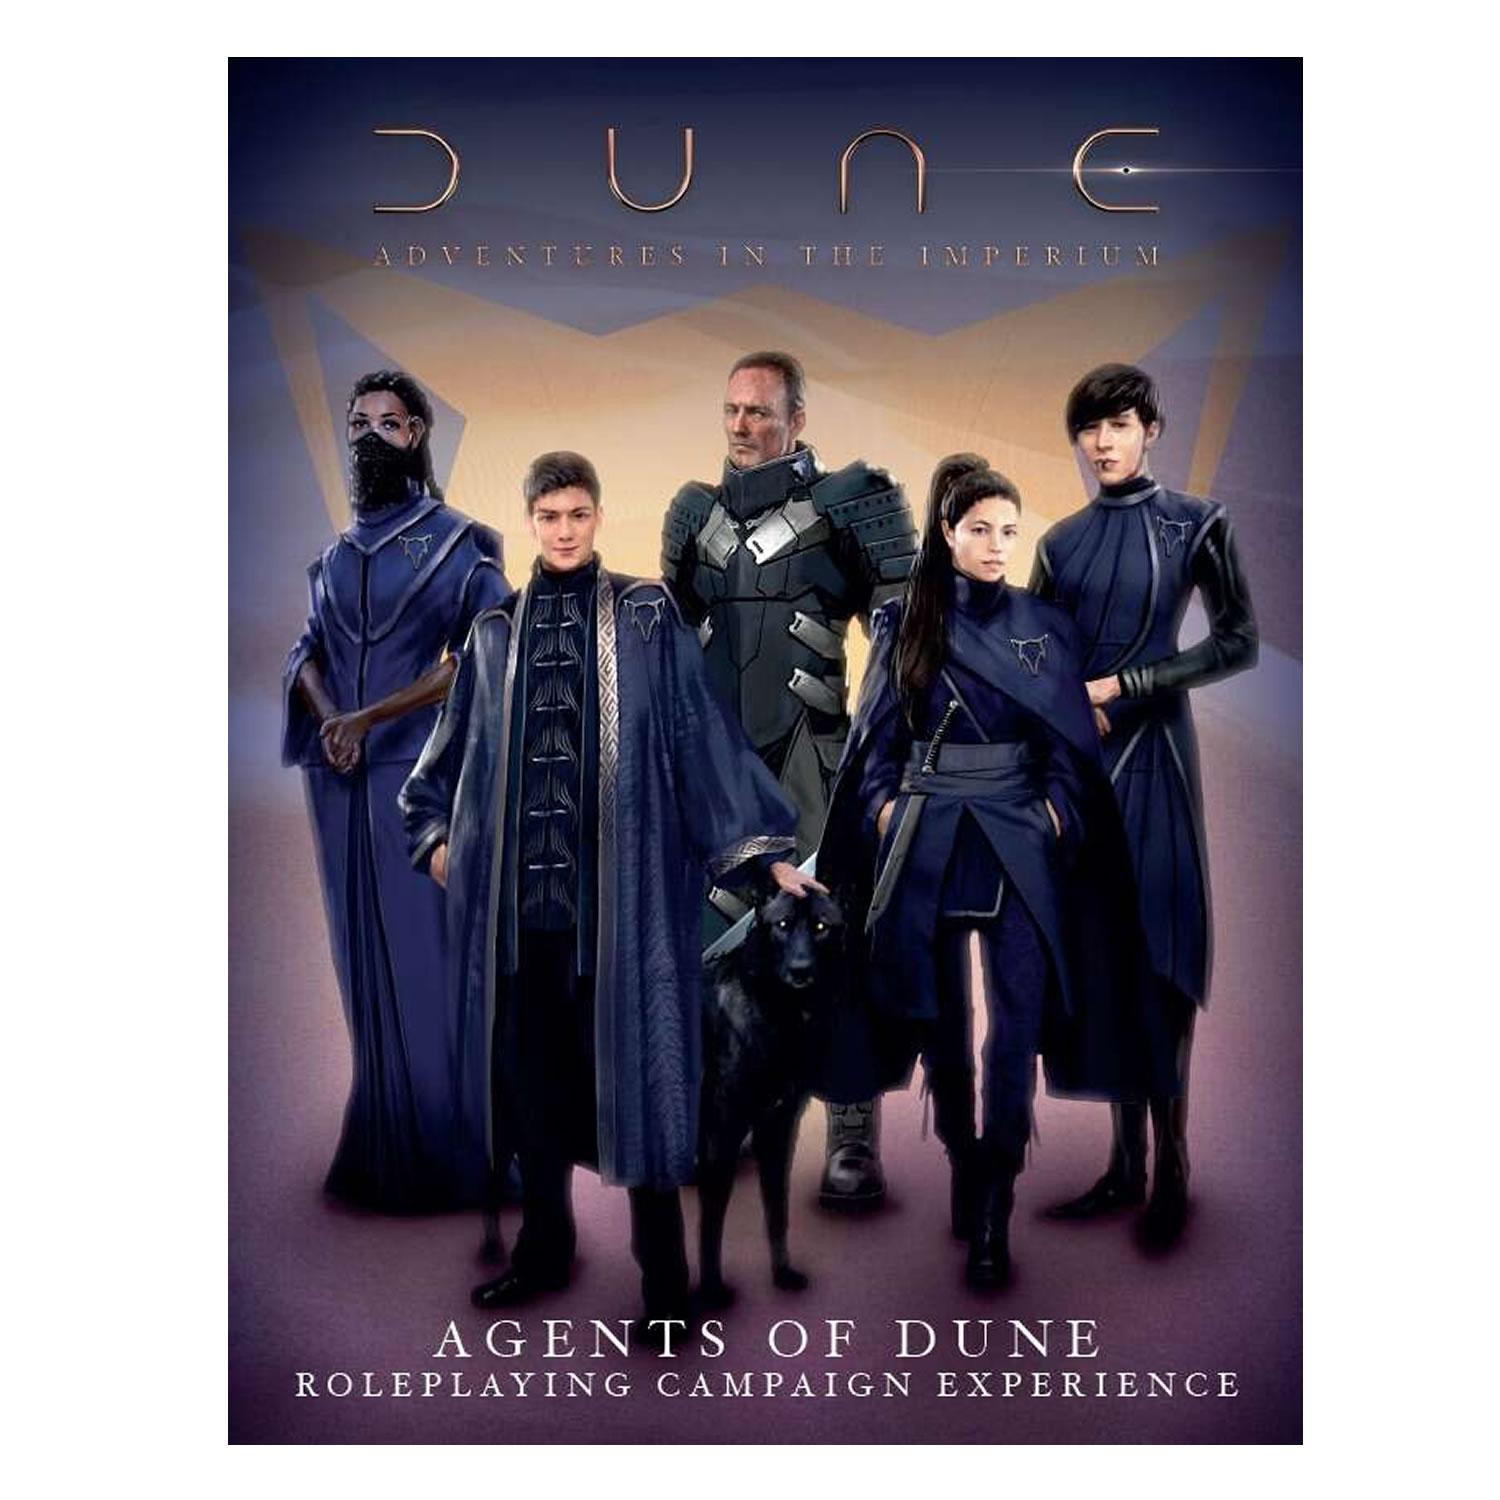 Dune Adventures in the Imperium Agents of Dune Boxset